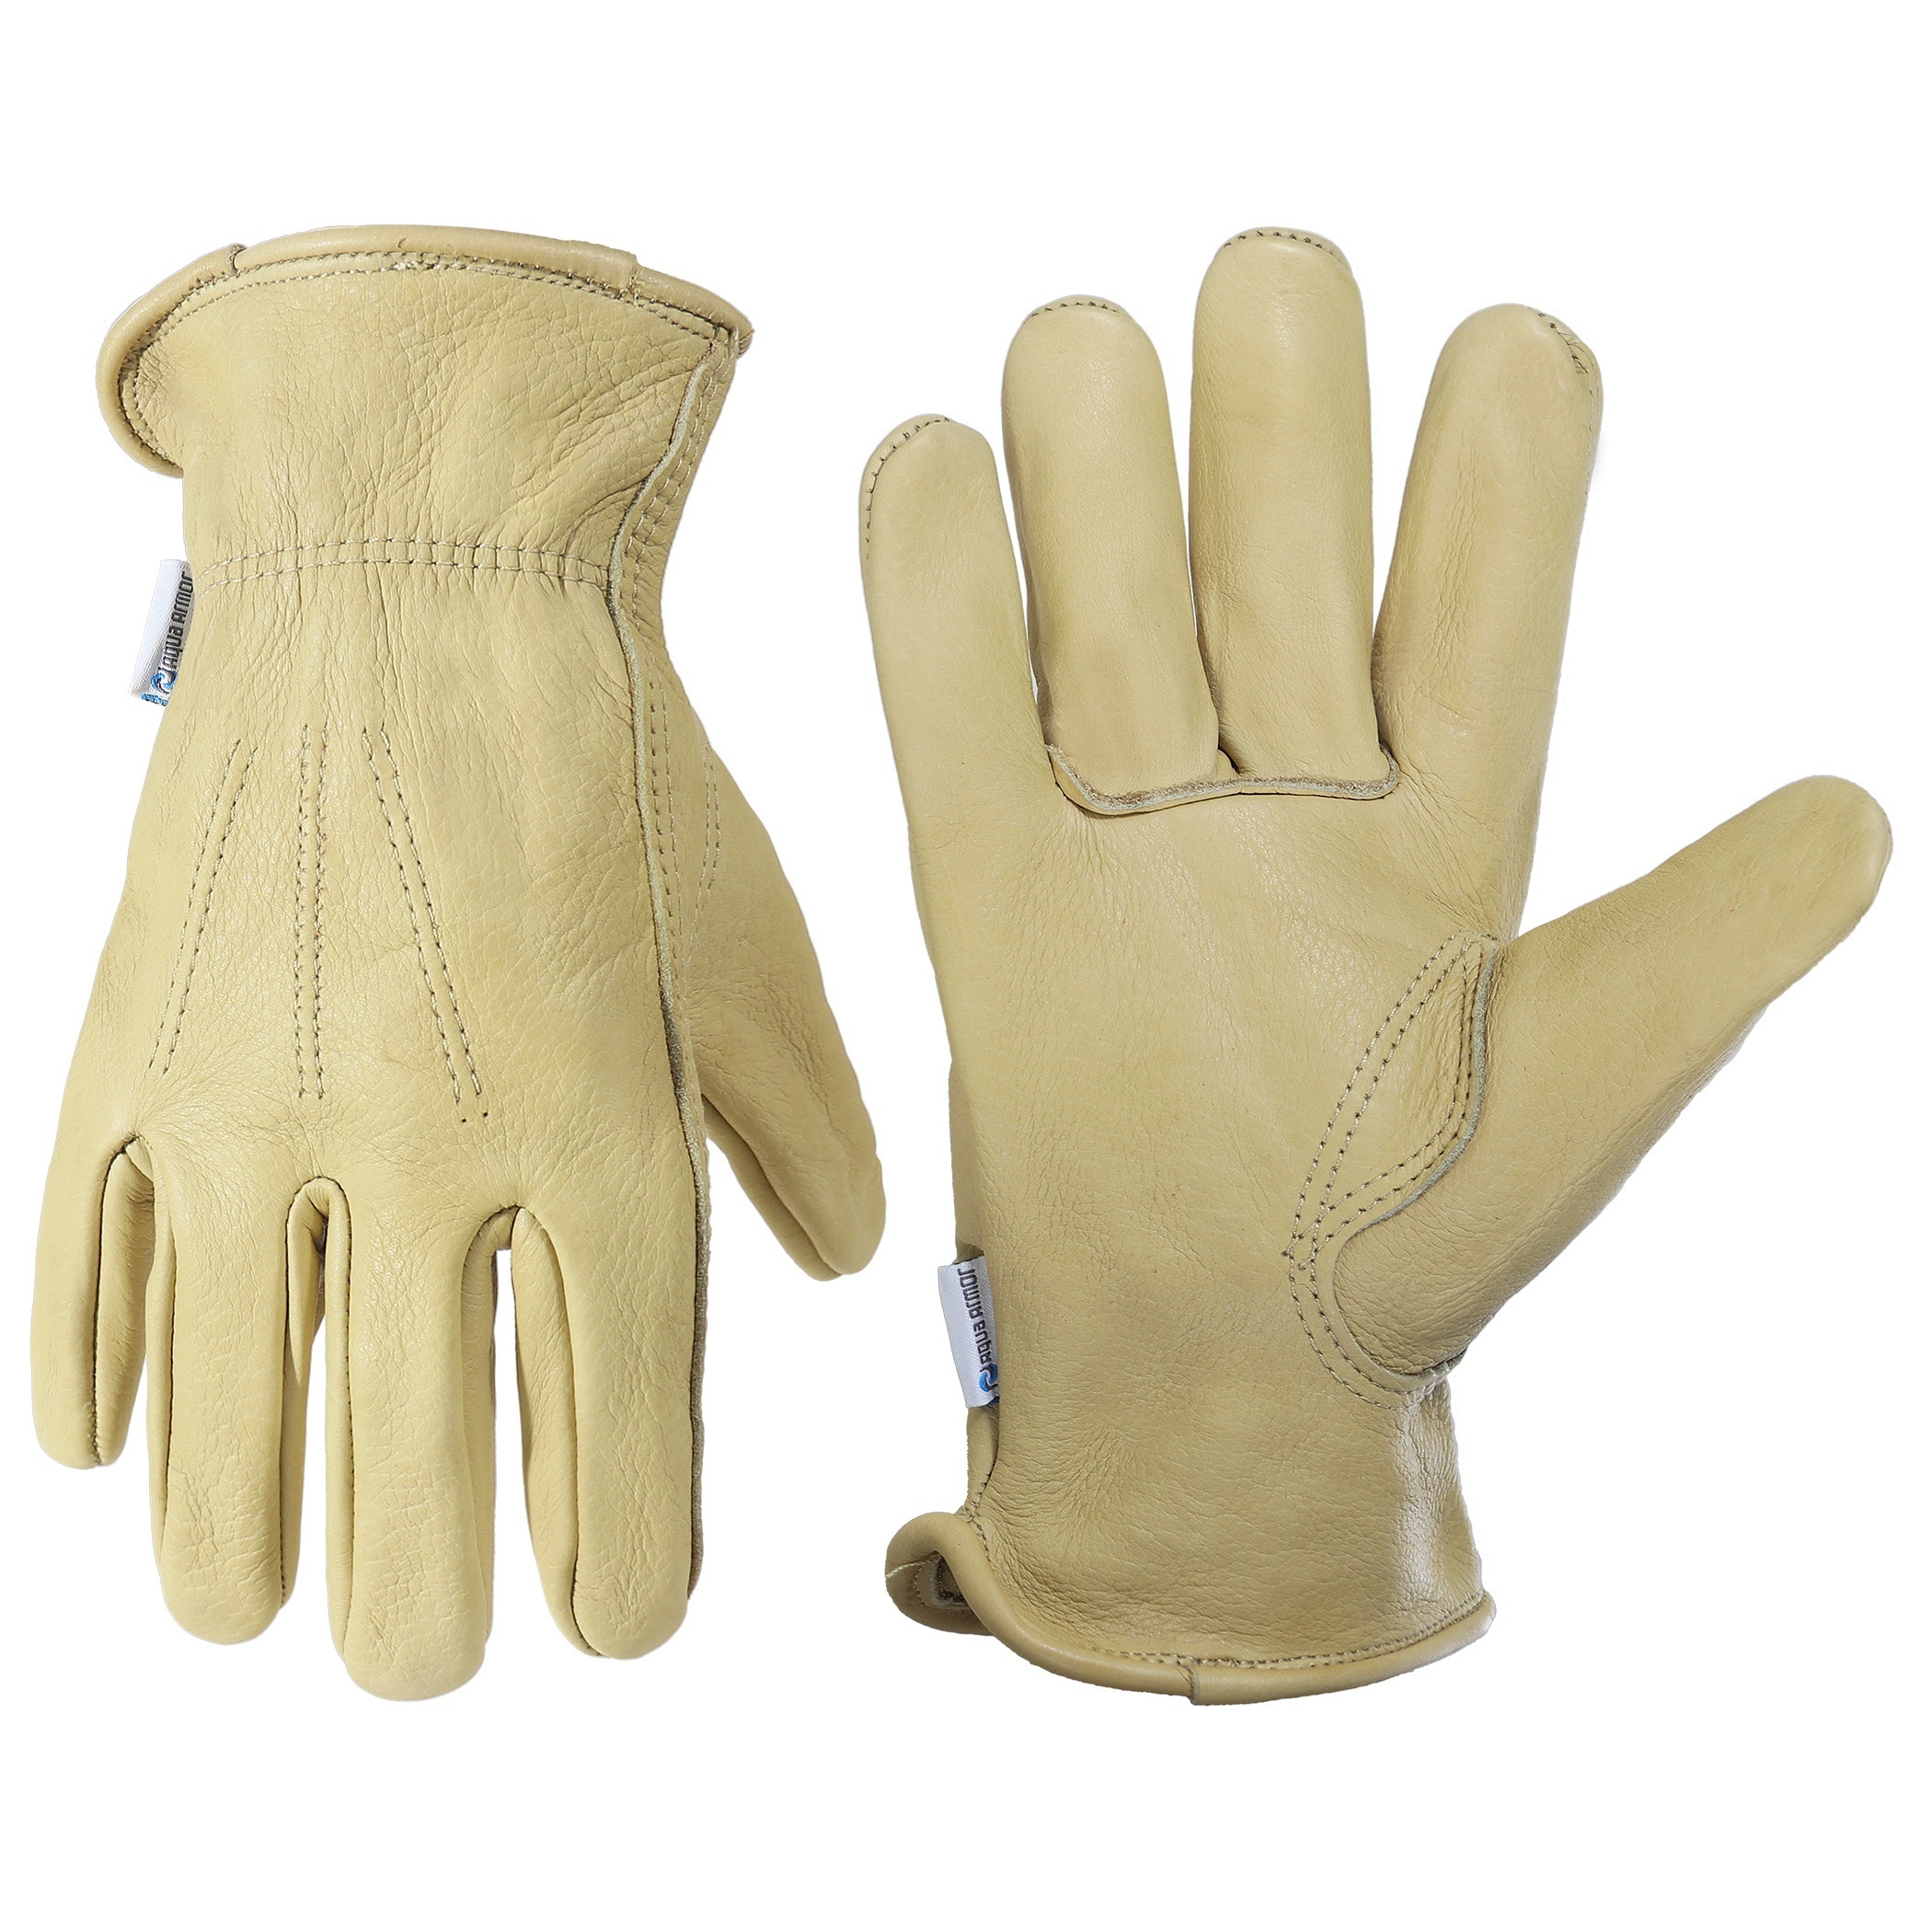 1 Pair Cowhide Leather Work Gloves For Men & Women, Waterproof Cowhide Work  Gloves For Driving, Construction, Yardwork, Gardening, BBQ, Welding Father